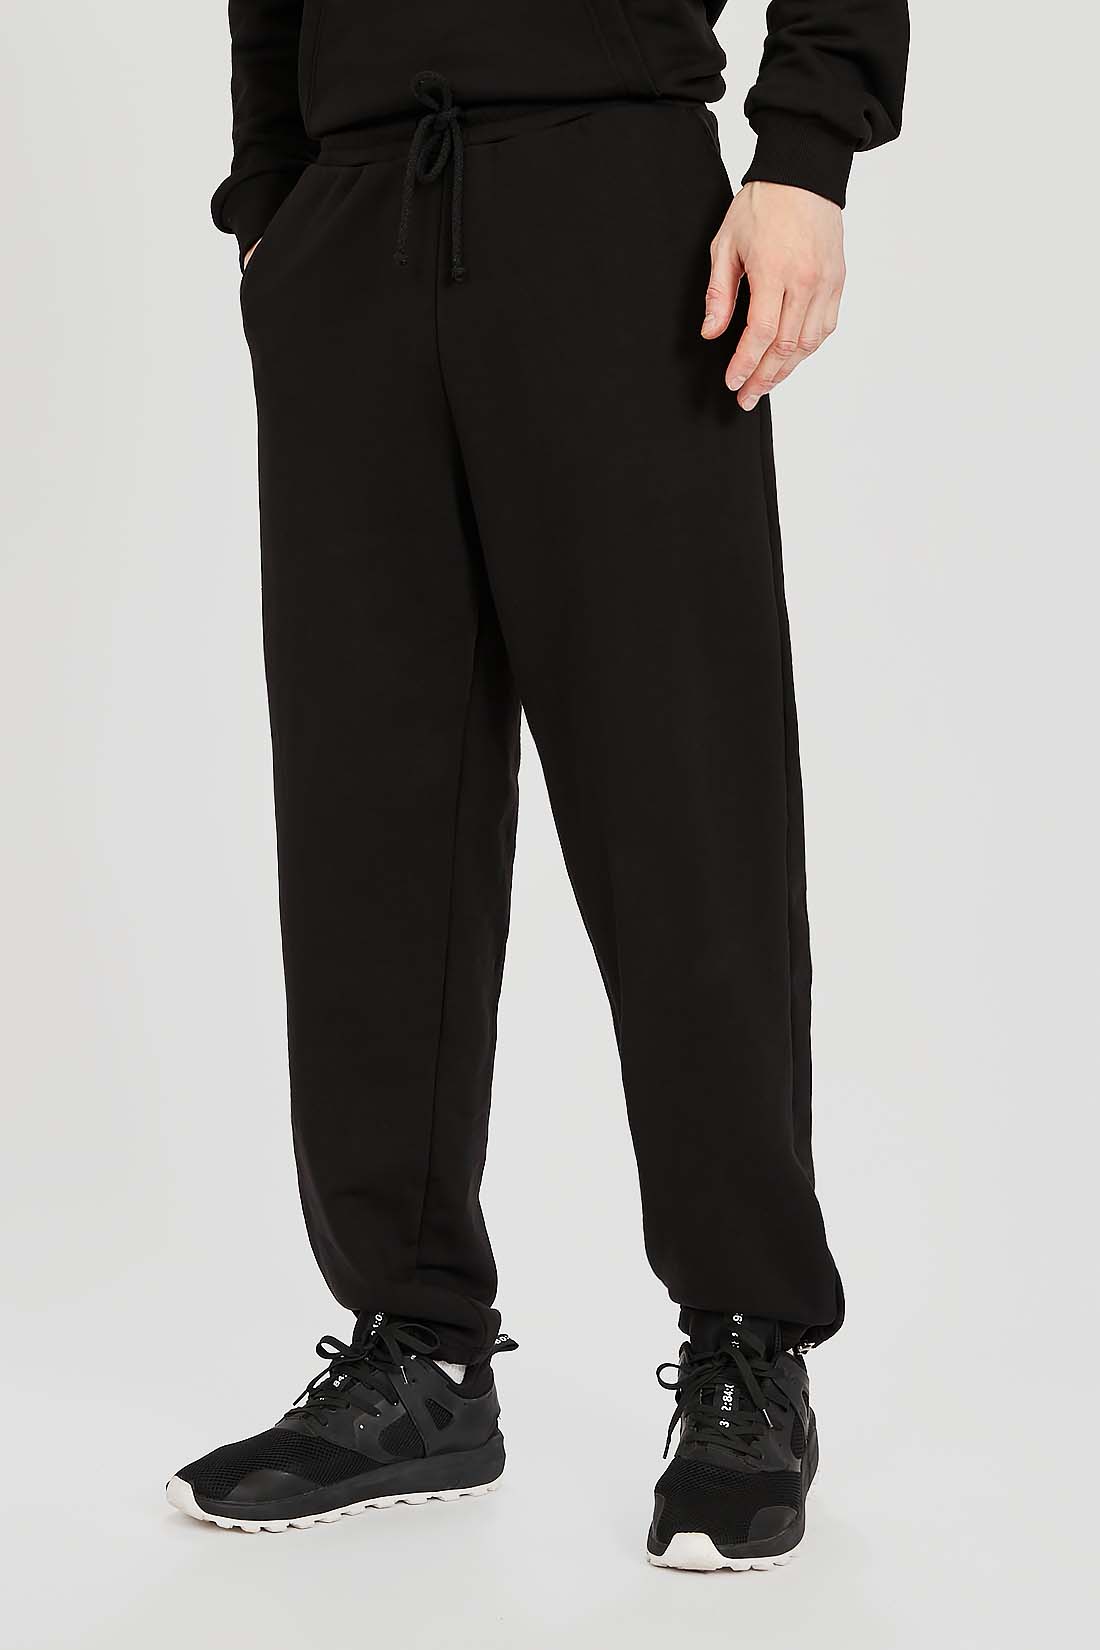 Спортивные брюки мужские Baon B7922023 черные L